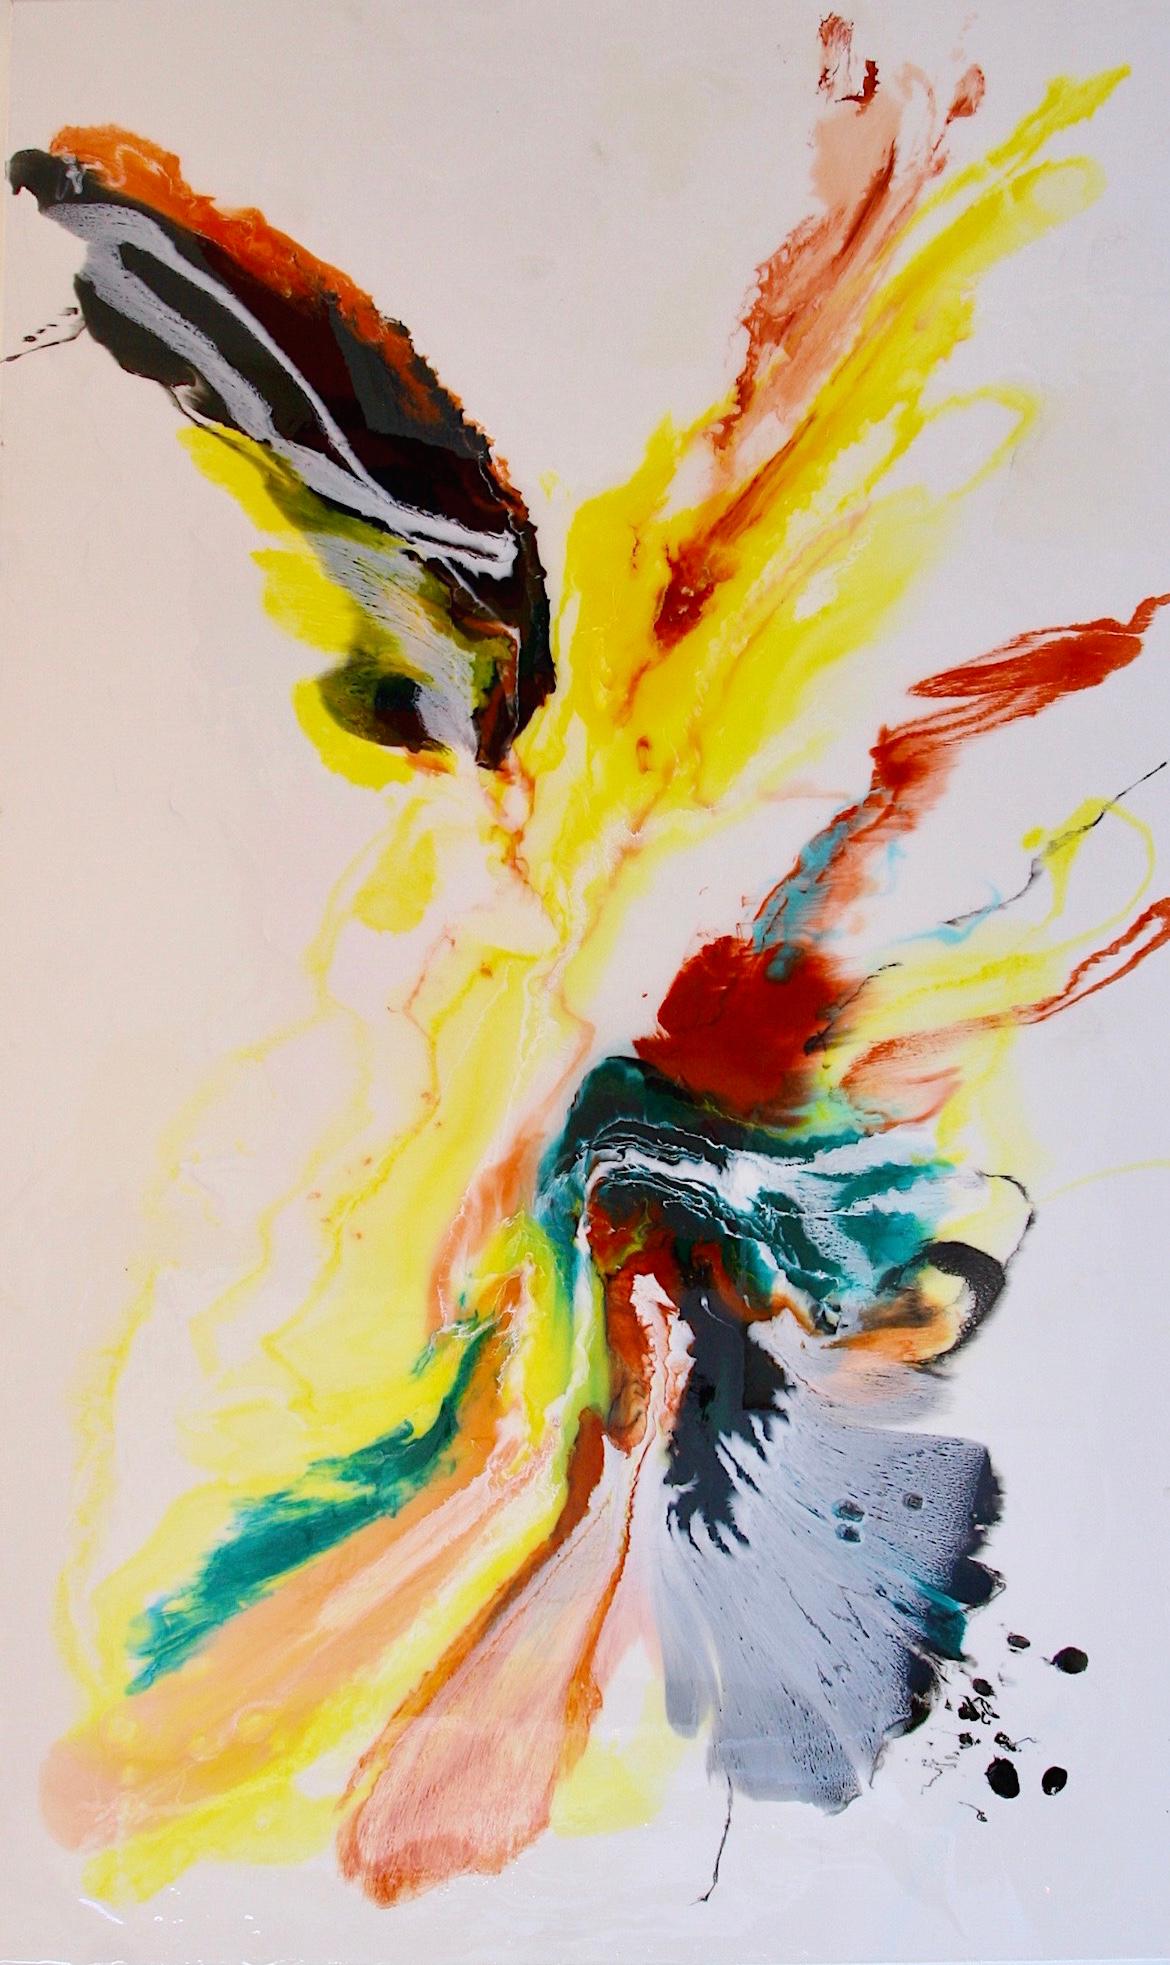 Couleur de l'objet non aimé n° 1 - art d'abstraction, réalisé en orange, jaune, rouge et turquoise